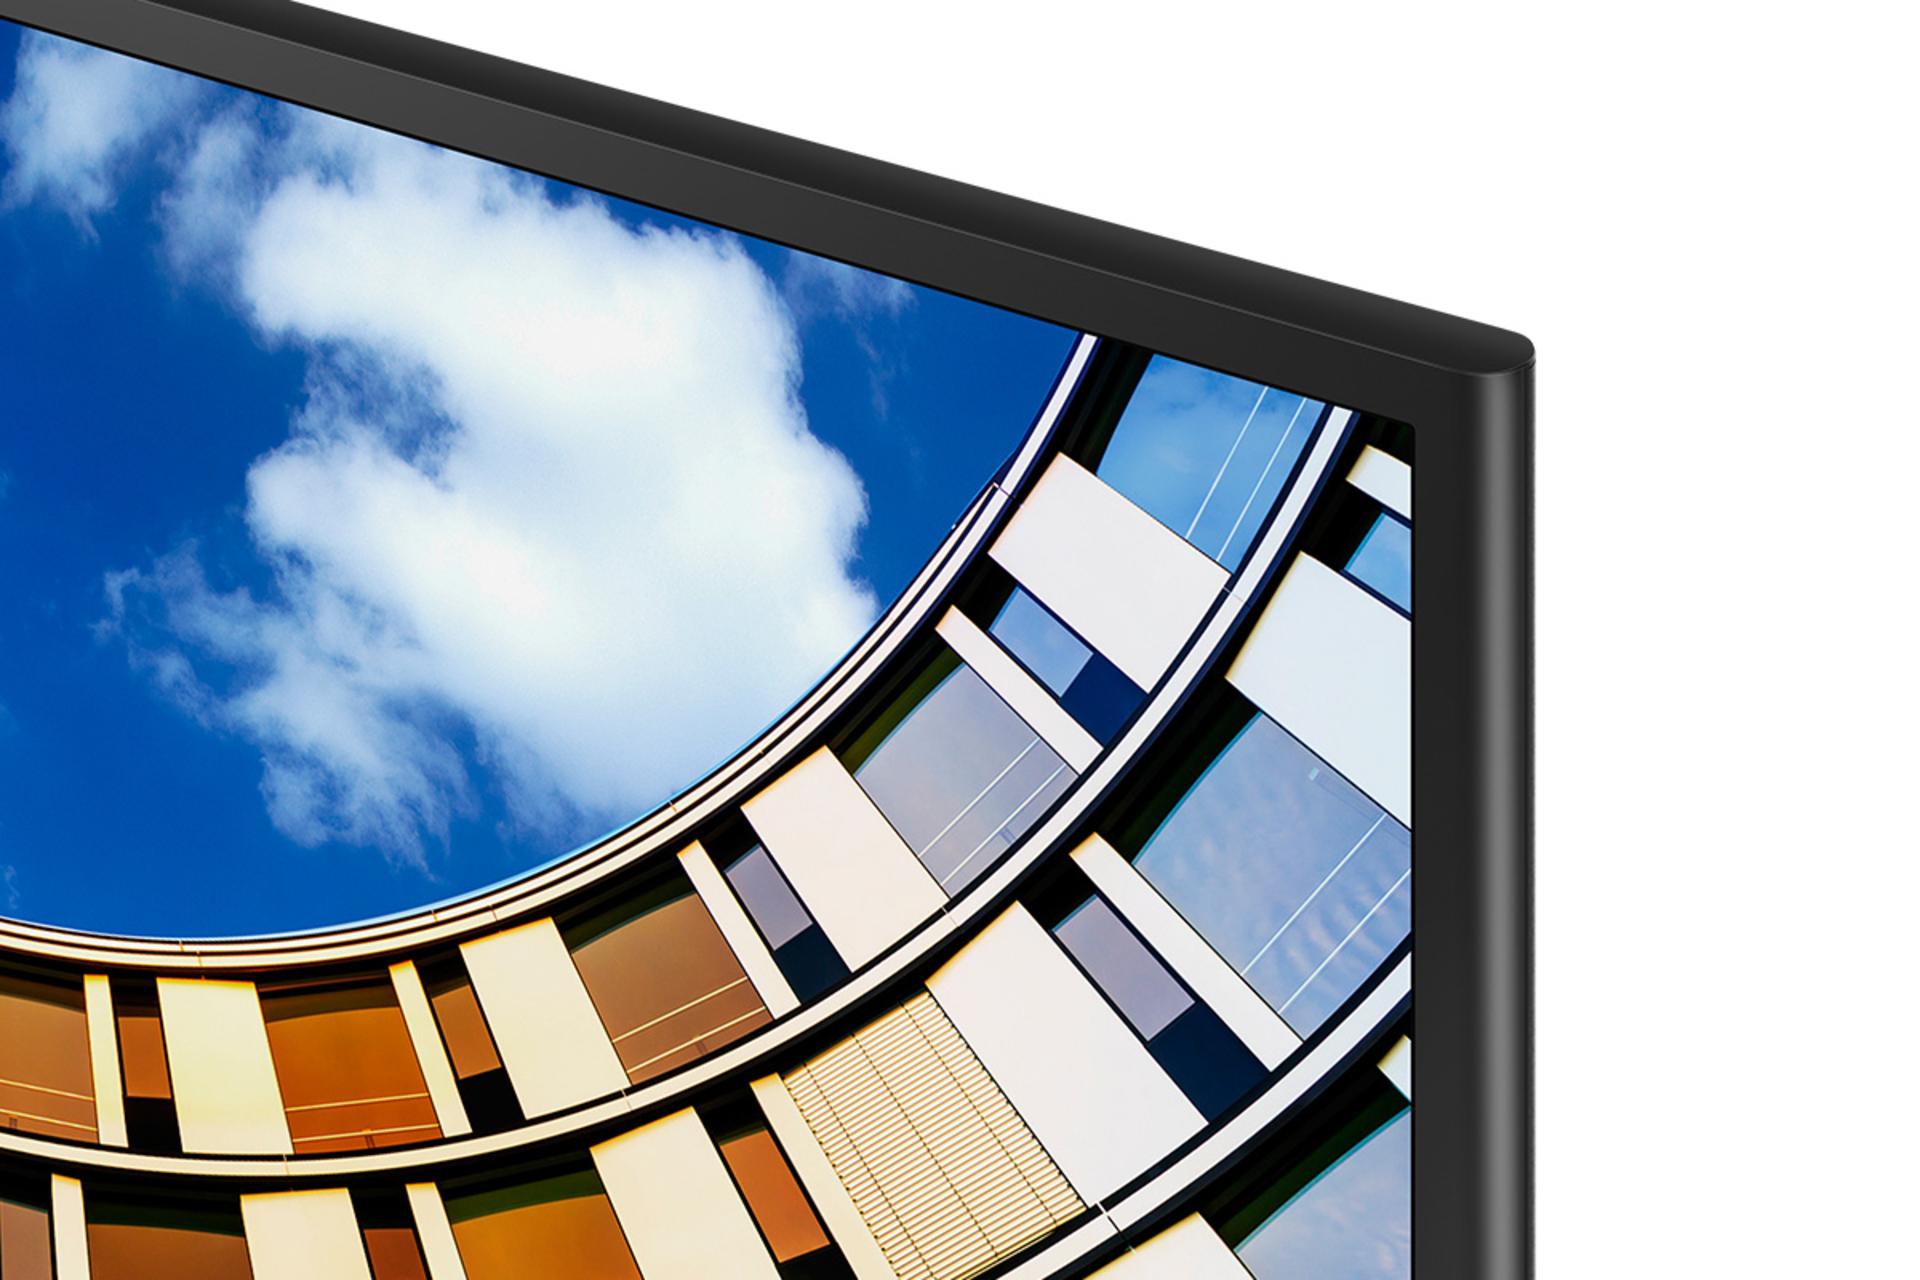 نمای بسته لبه بالا تلویزیون سامسونگ N5880 مدل 49 اینچ و نمایش حاشیه دور صفحه